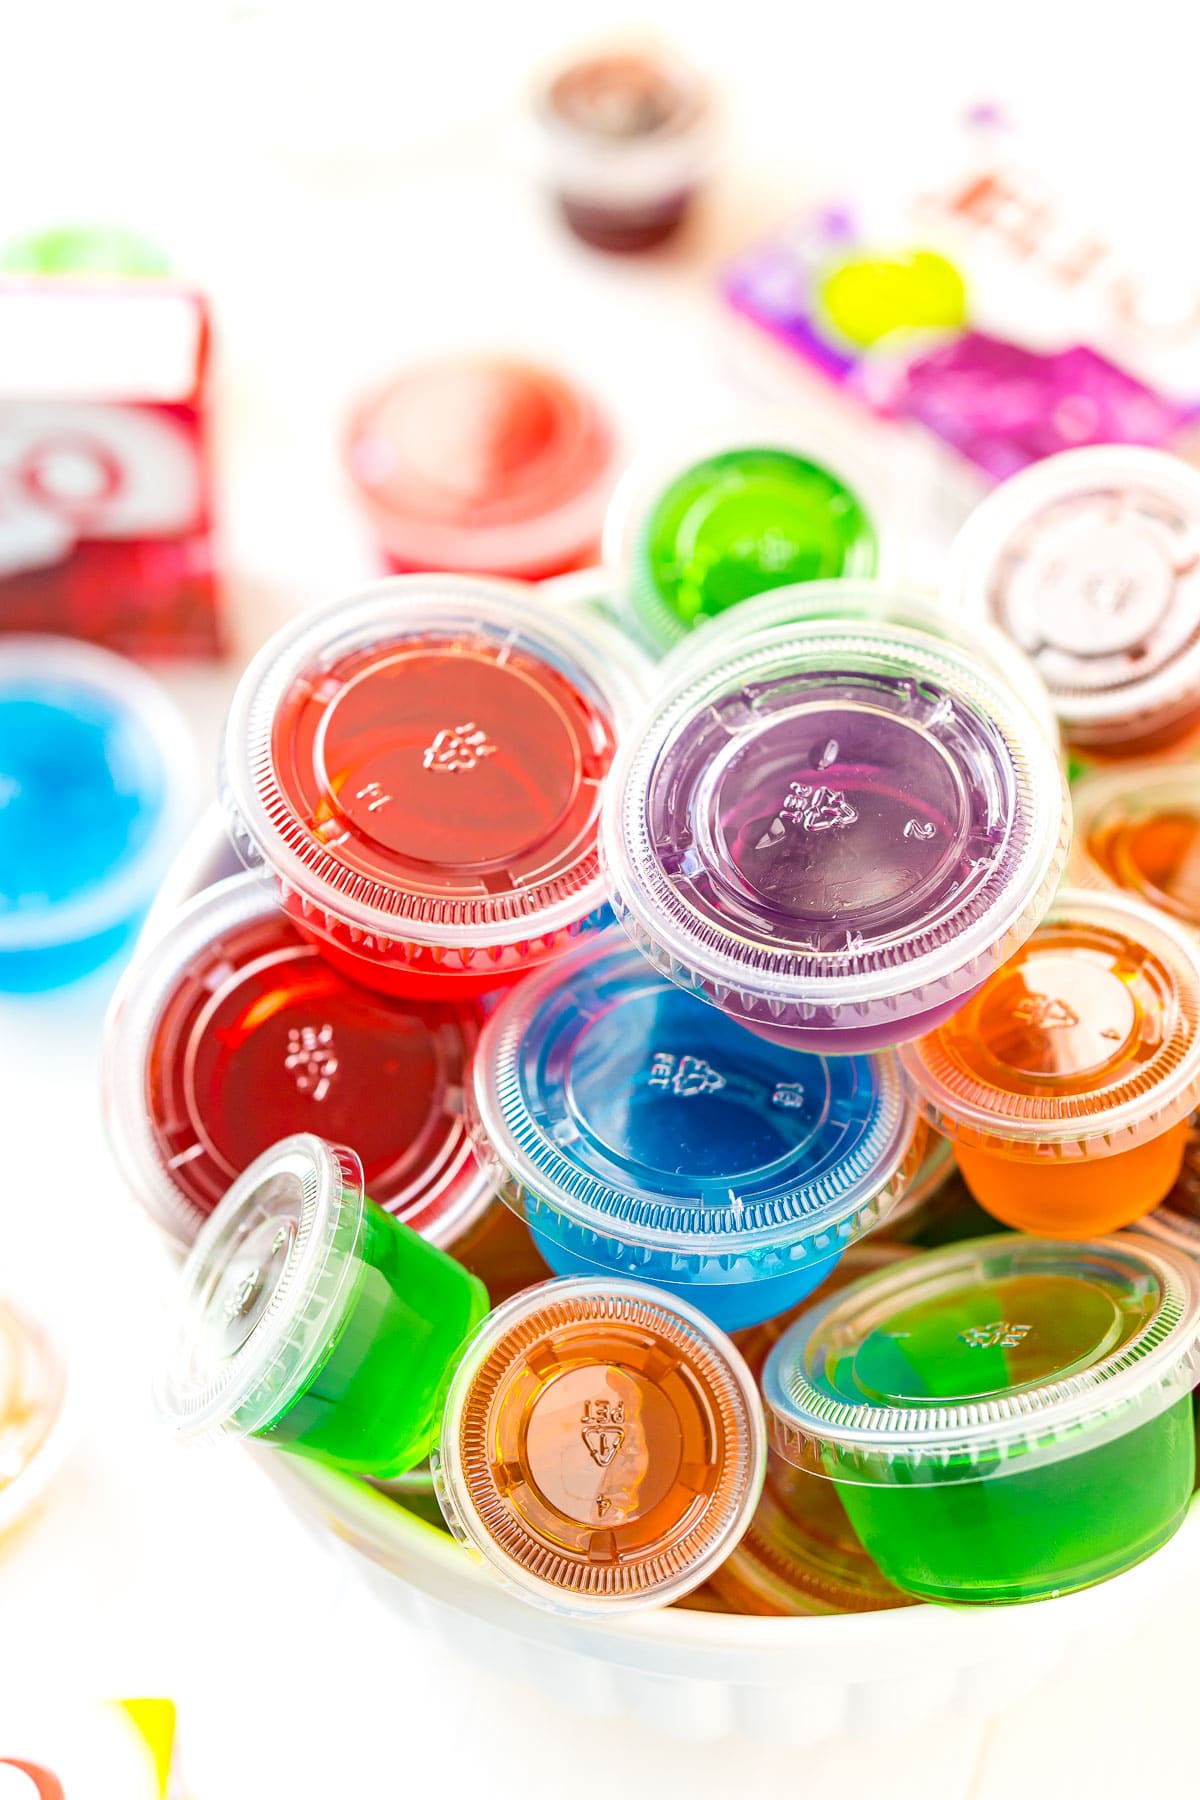 Multi colored jello shots in a white bowl.